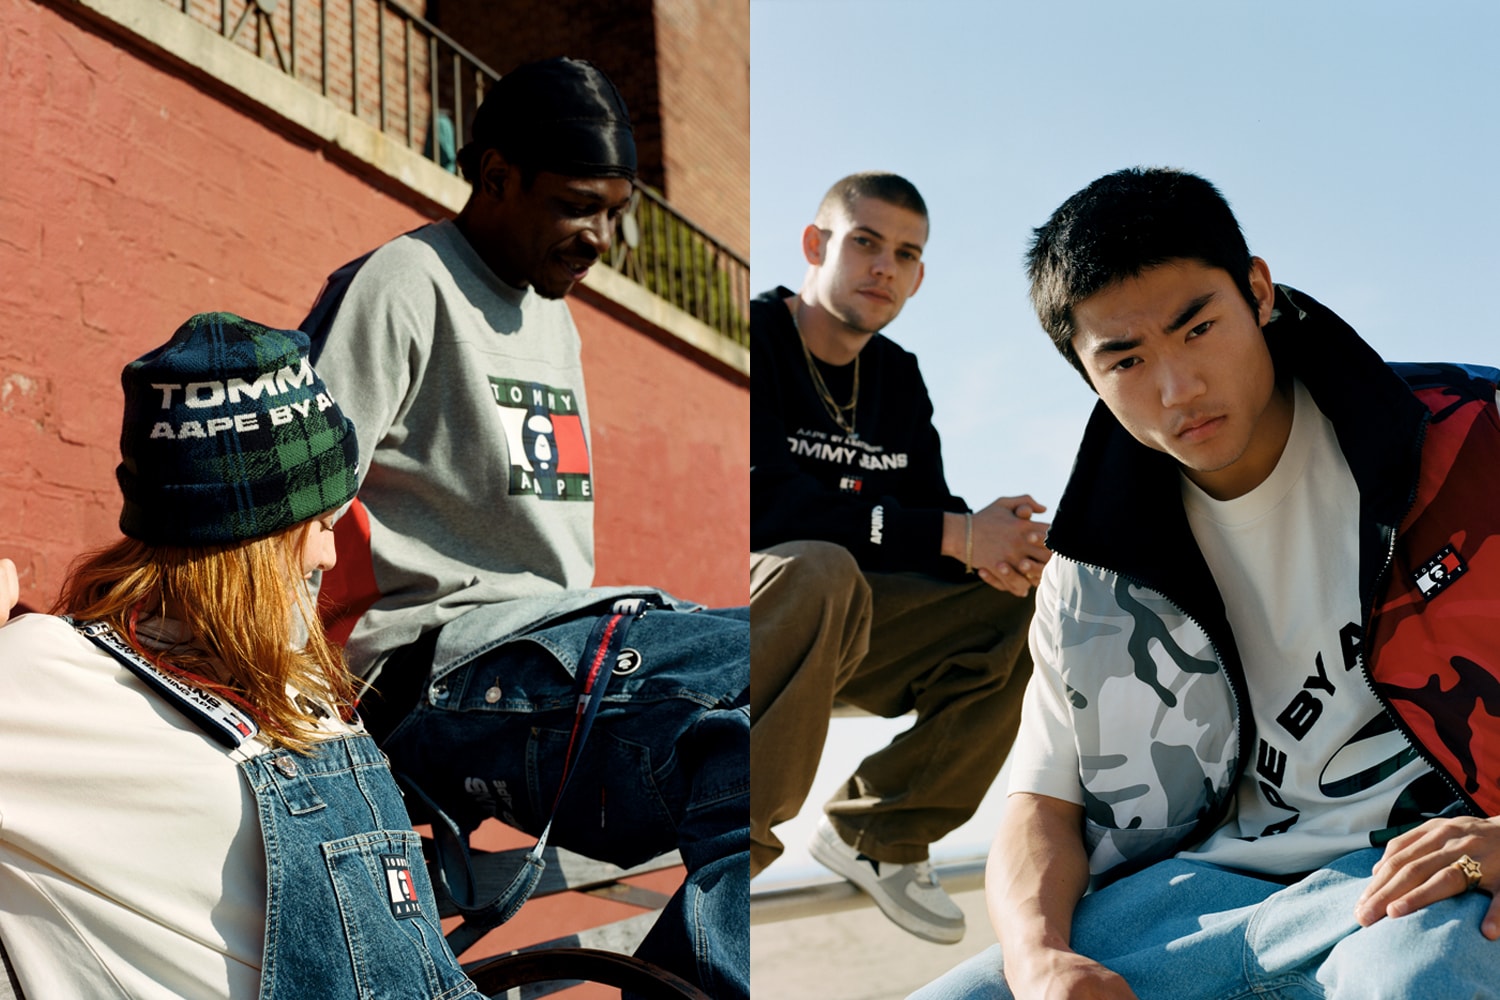 타미 진스 x AAPE, 뉴욕 스케이트 문화가 담긴 두 번째 협업 컬렉션 출시 tommy jeans aape bape collaboration skateboard newyork